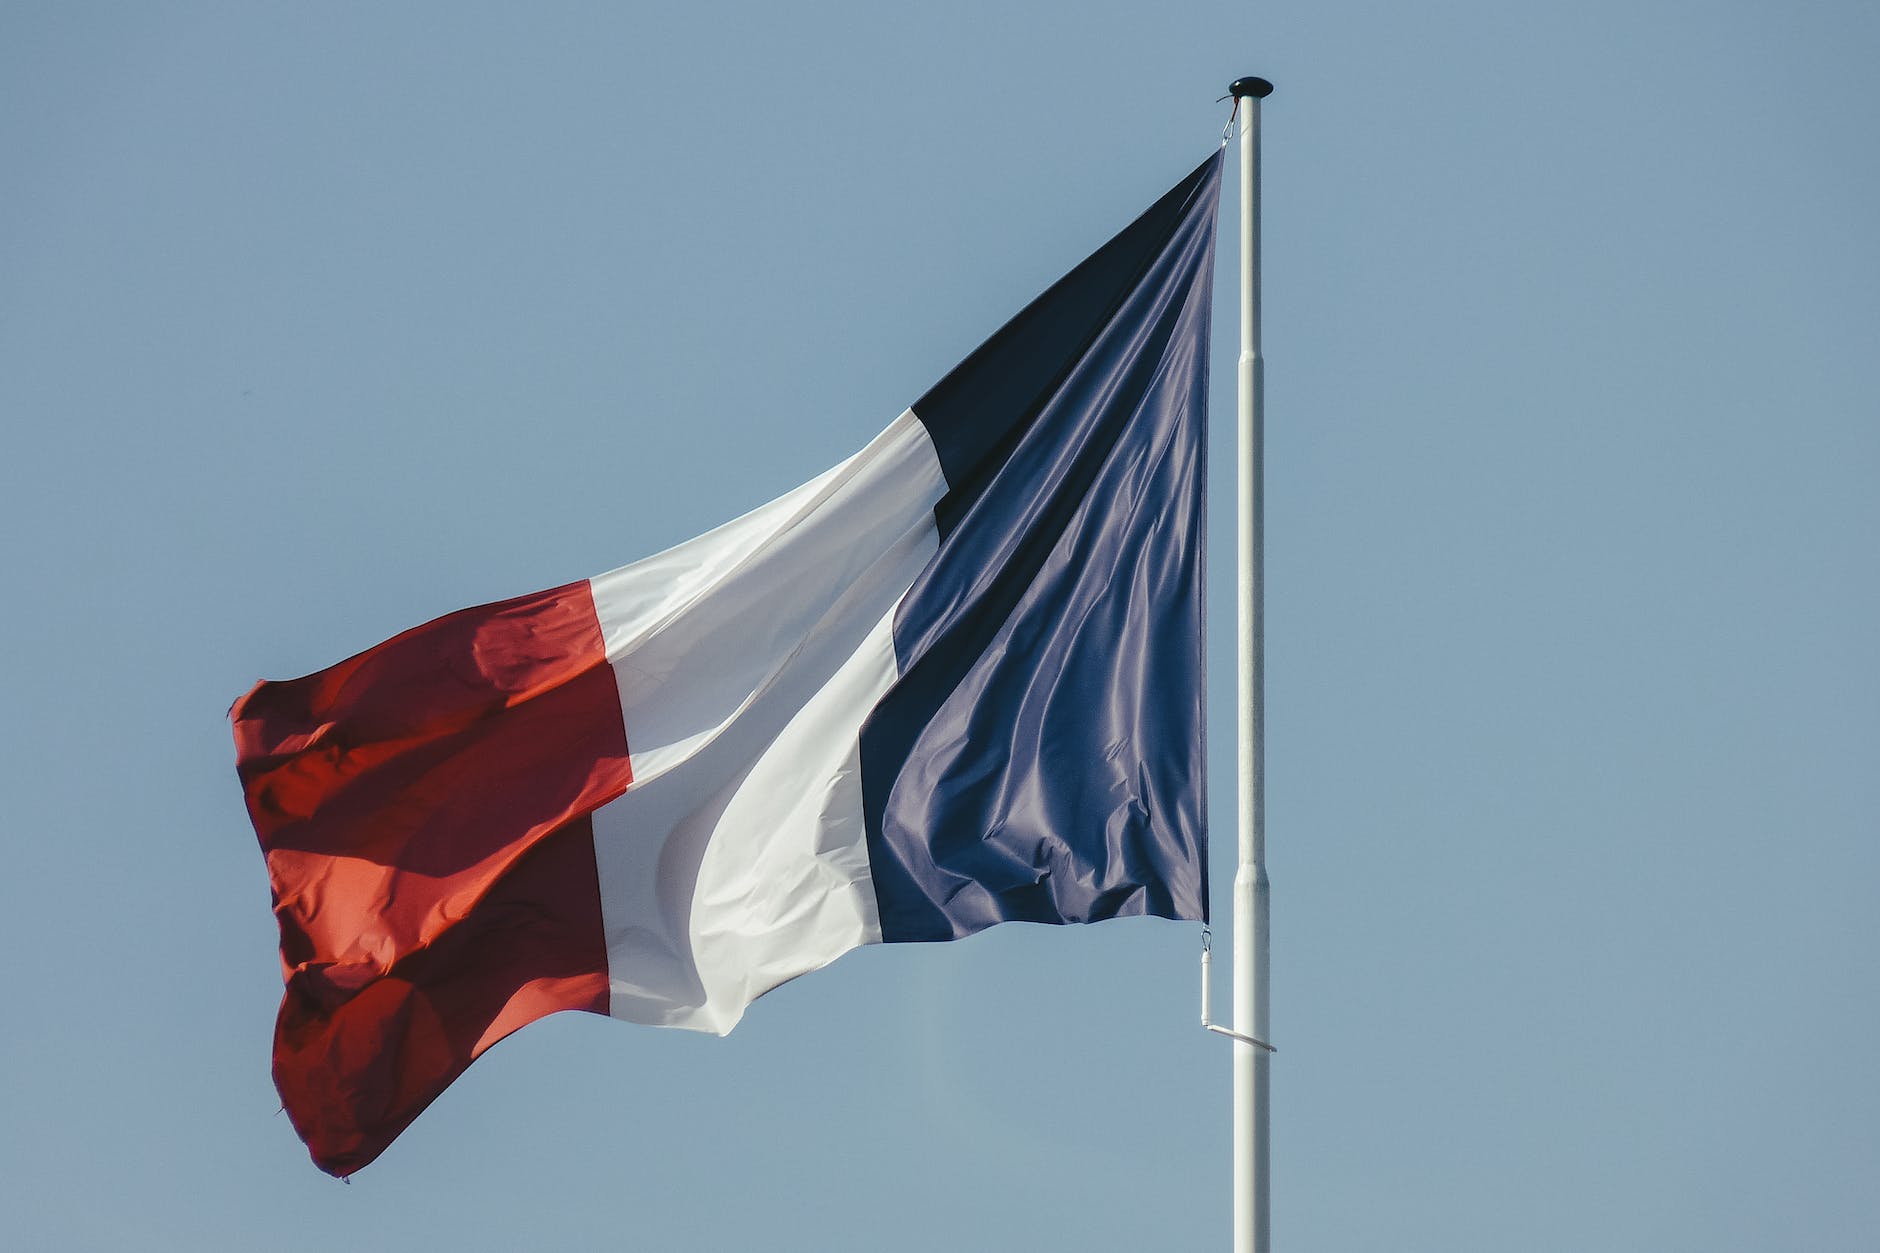 francouzská vlajka proti modré obloze